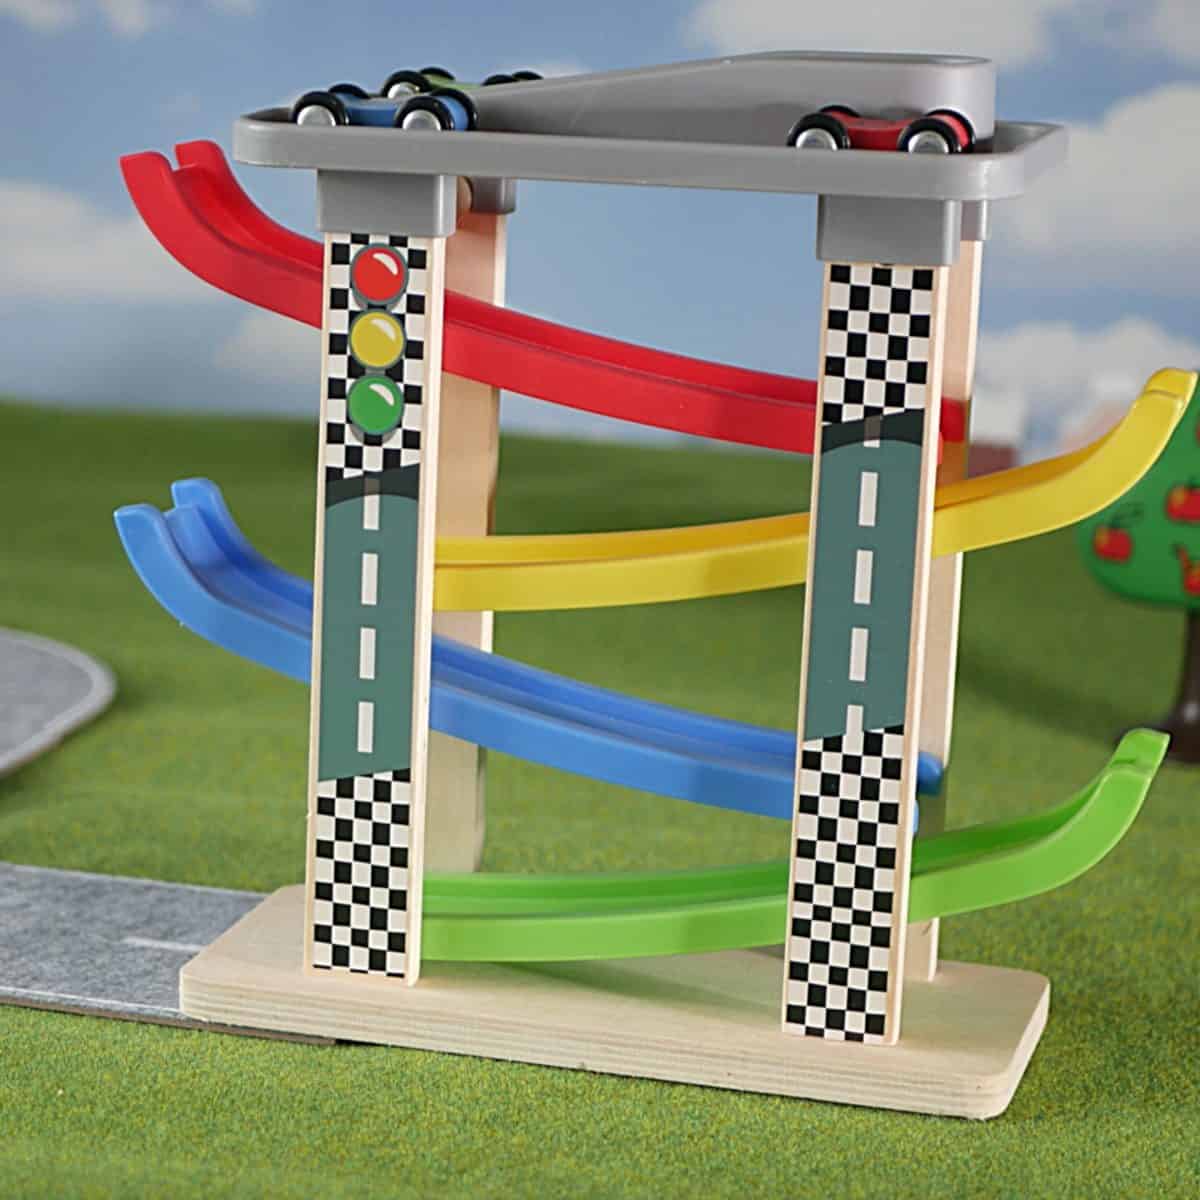 Beste speelgoed garage voor dreumes: Top Bright raceautobaan